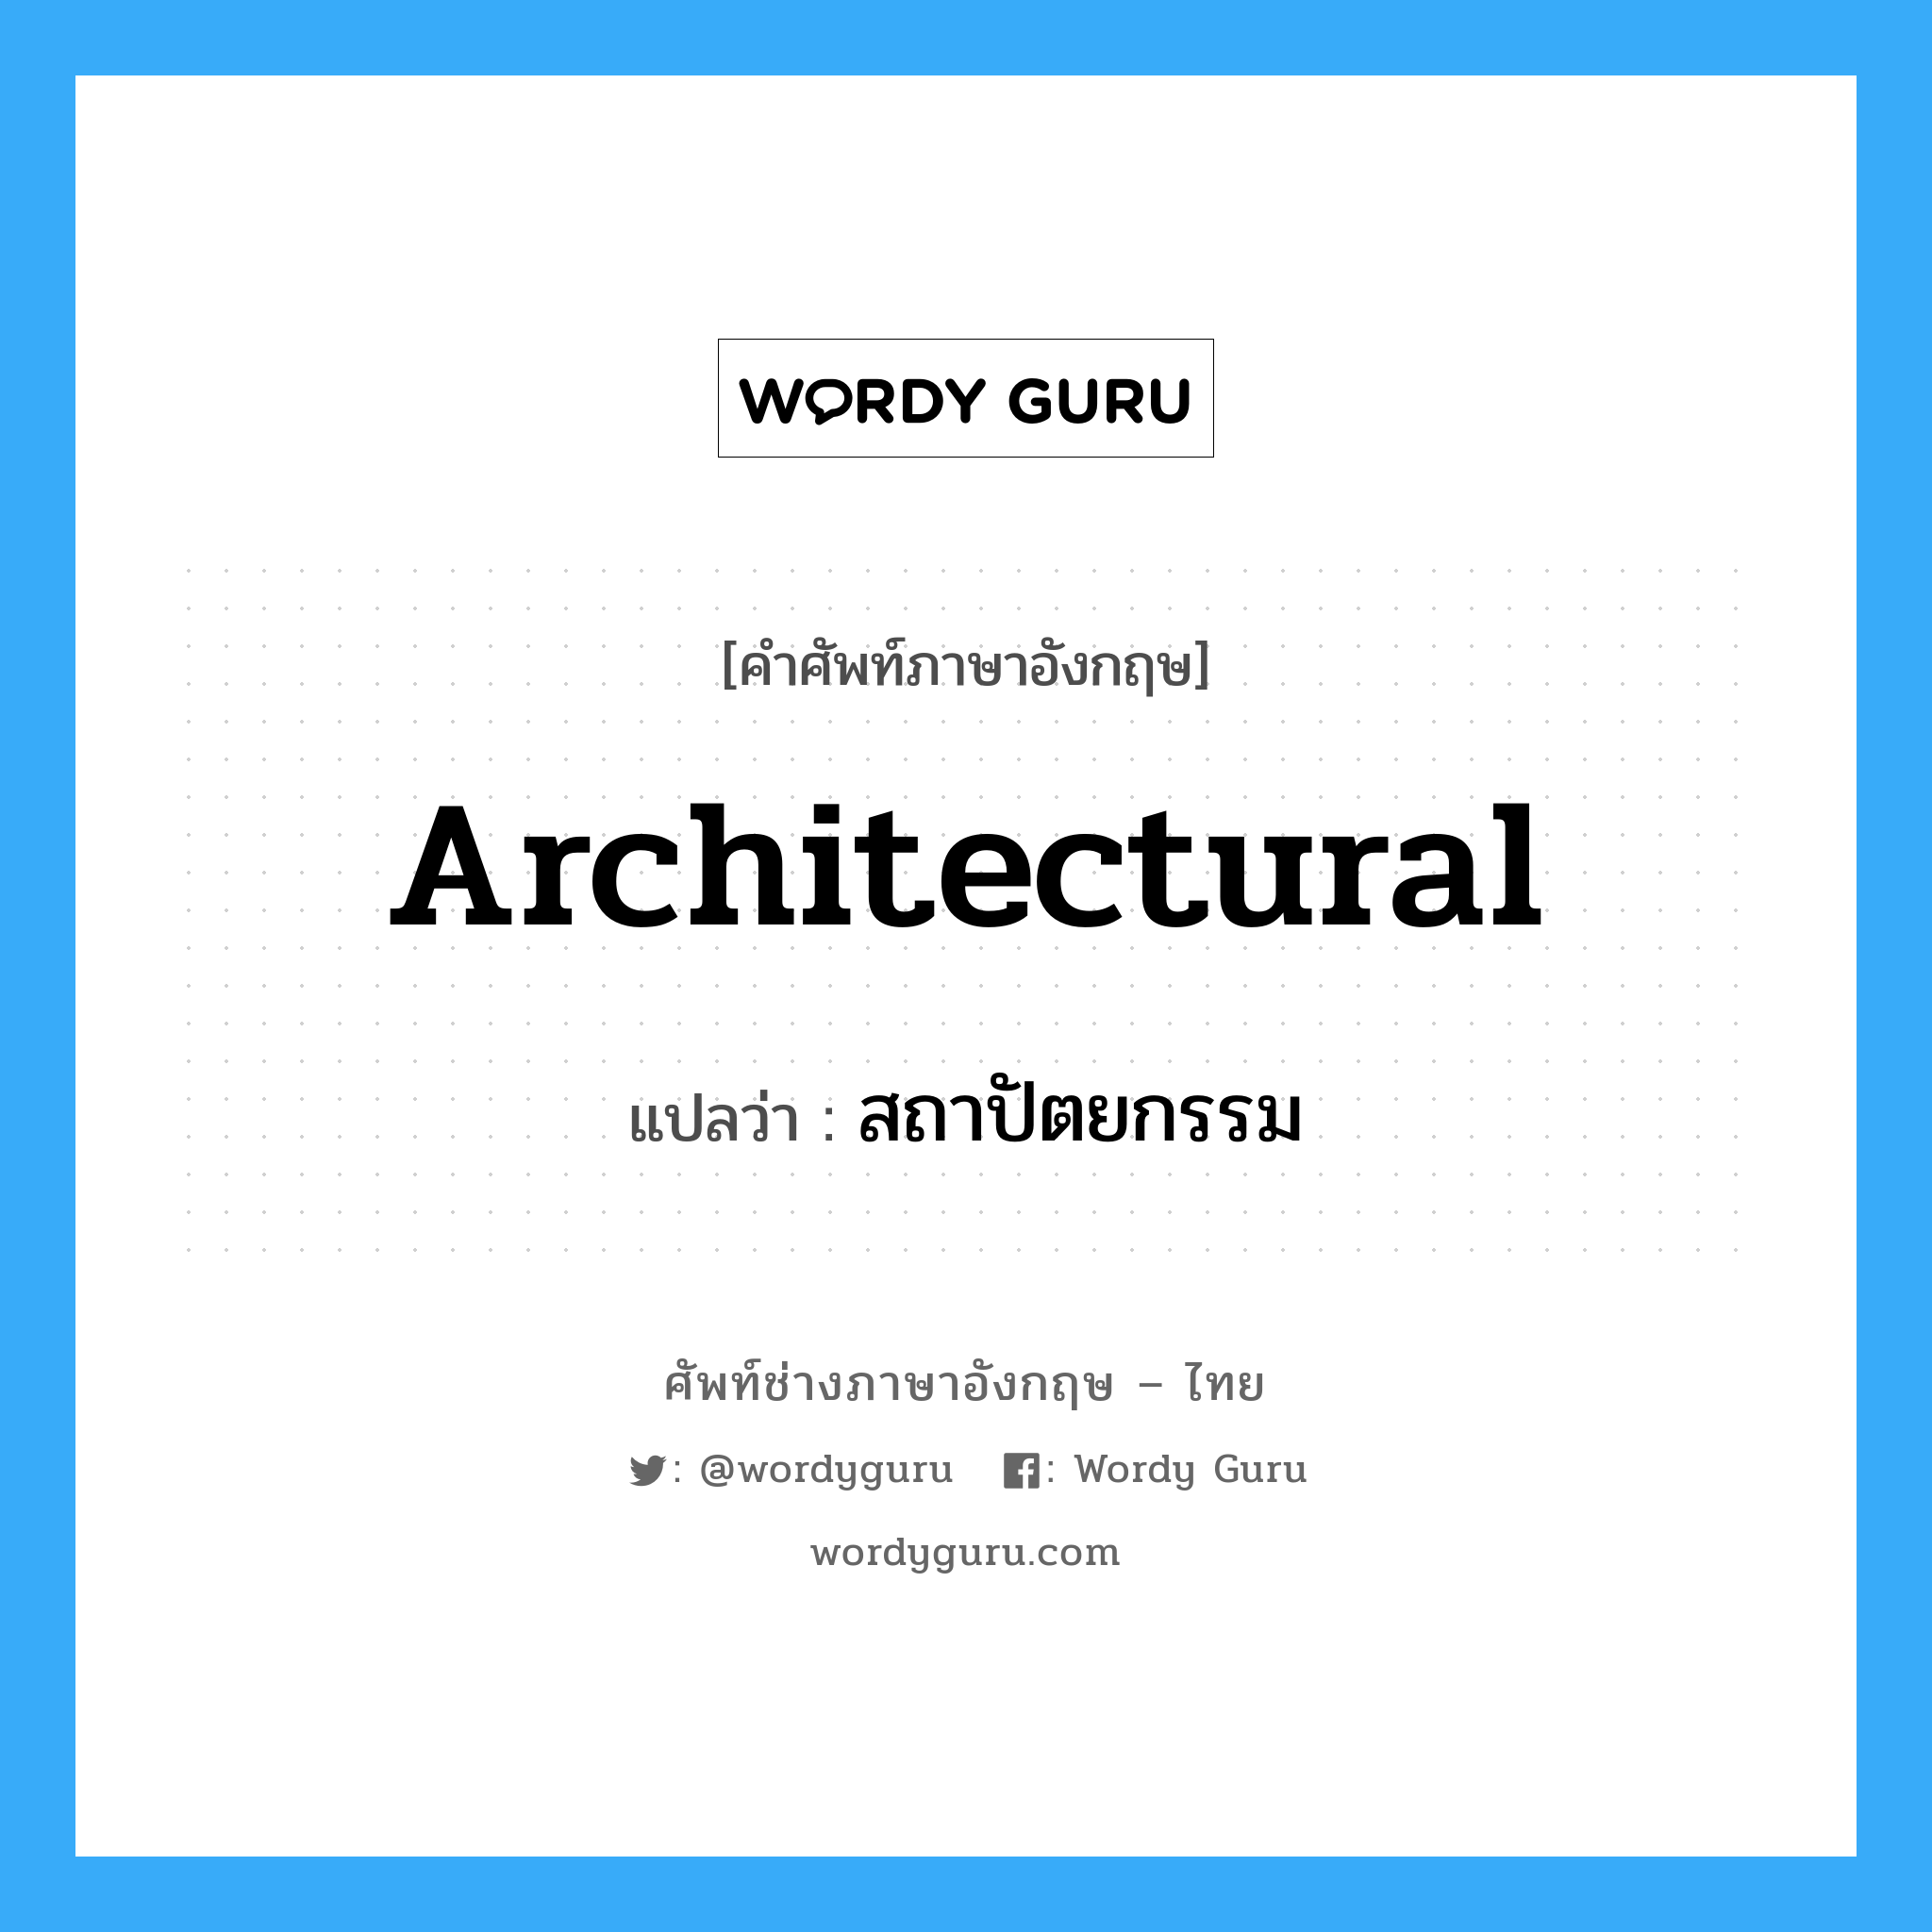 สถาปัตยกรรม ภาษาอังกฤษ?, คำศัพท์ช่างภาษาอังกฤษ - ไทย สถาปัตยกรรม คำศัพท์ภาษาอังกฤษ สถาปัตยกรรม แปลว่า architectural